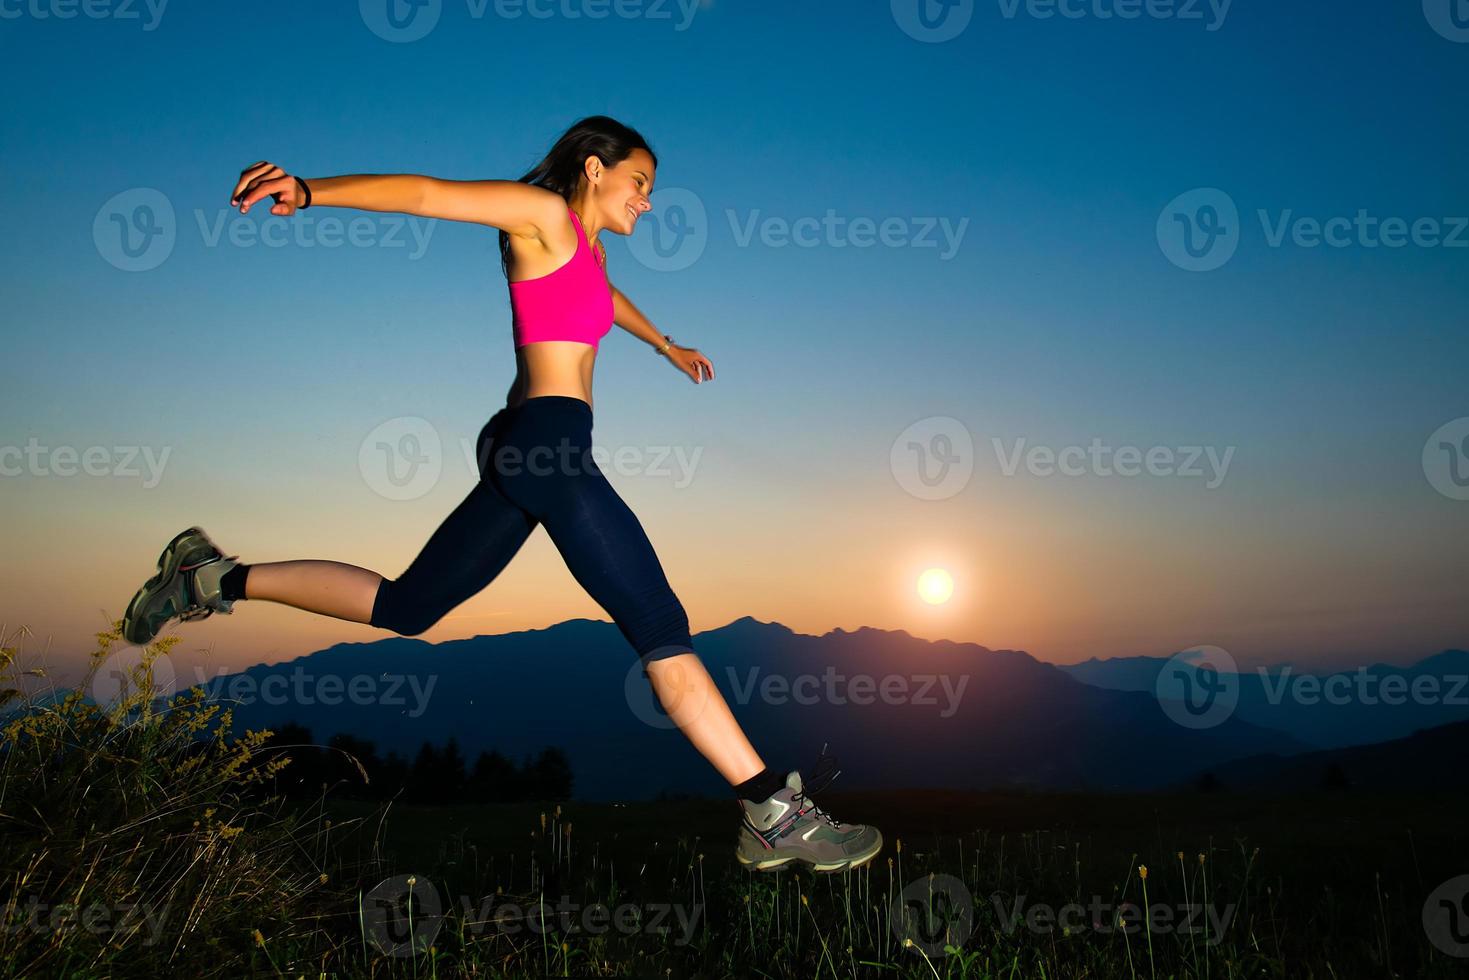 garota pulando ao pôr do sol nas montanhas foto